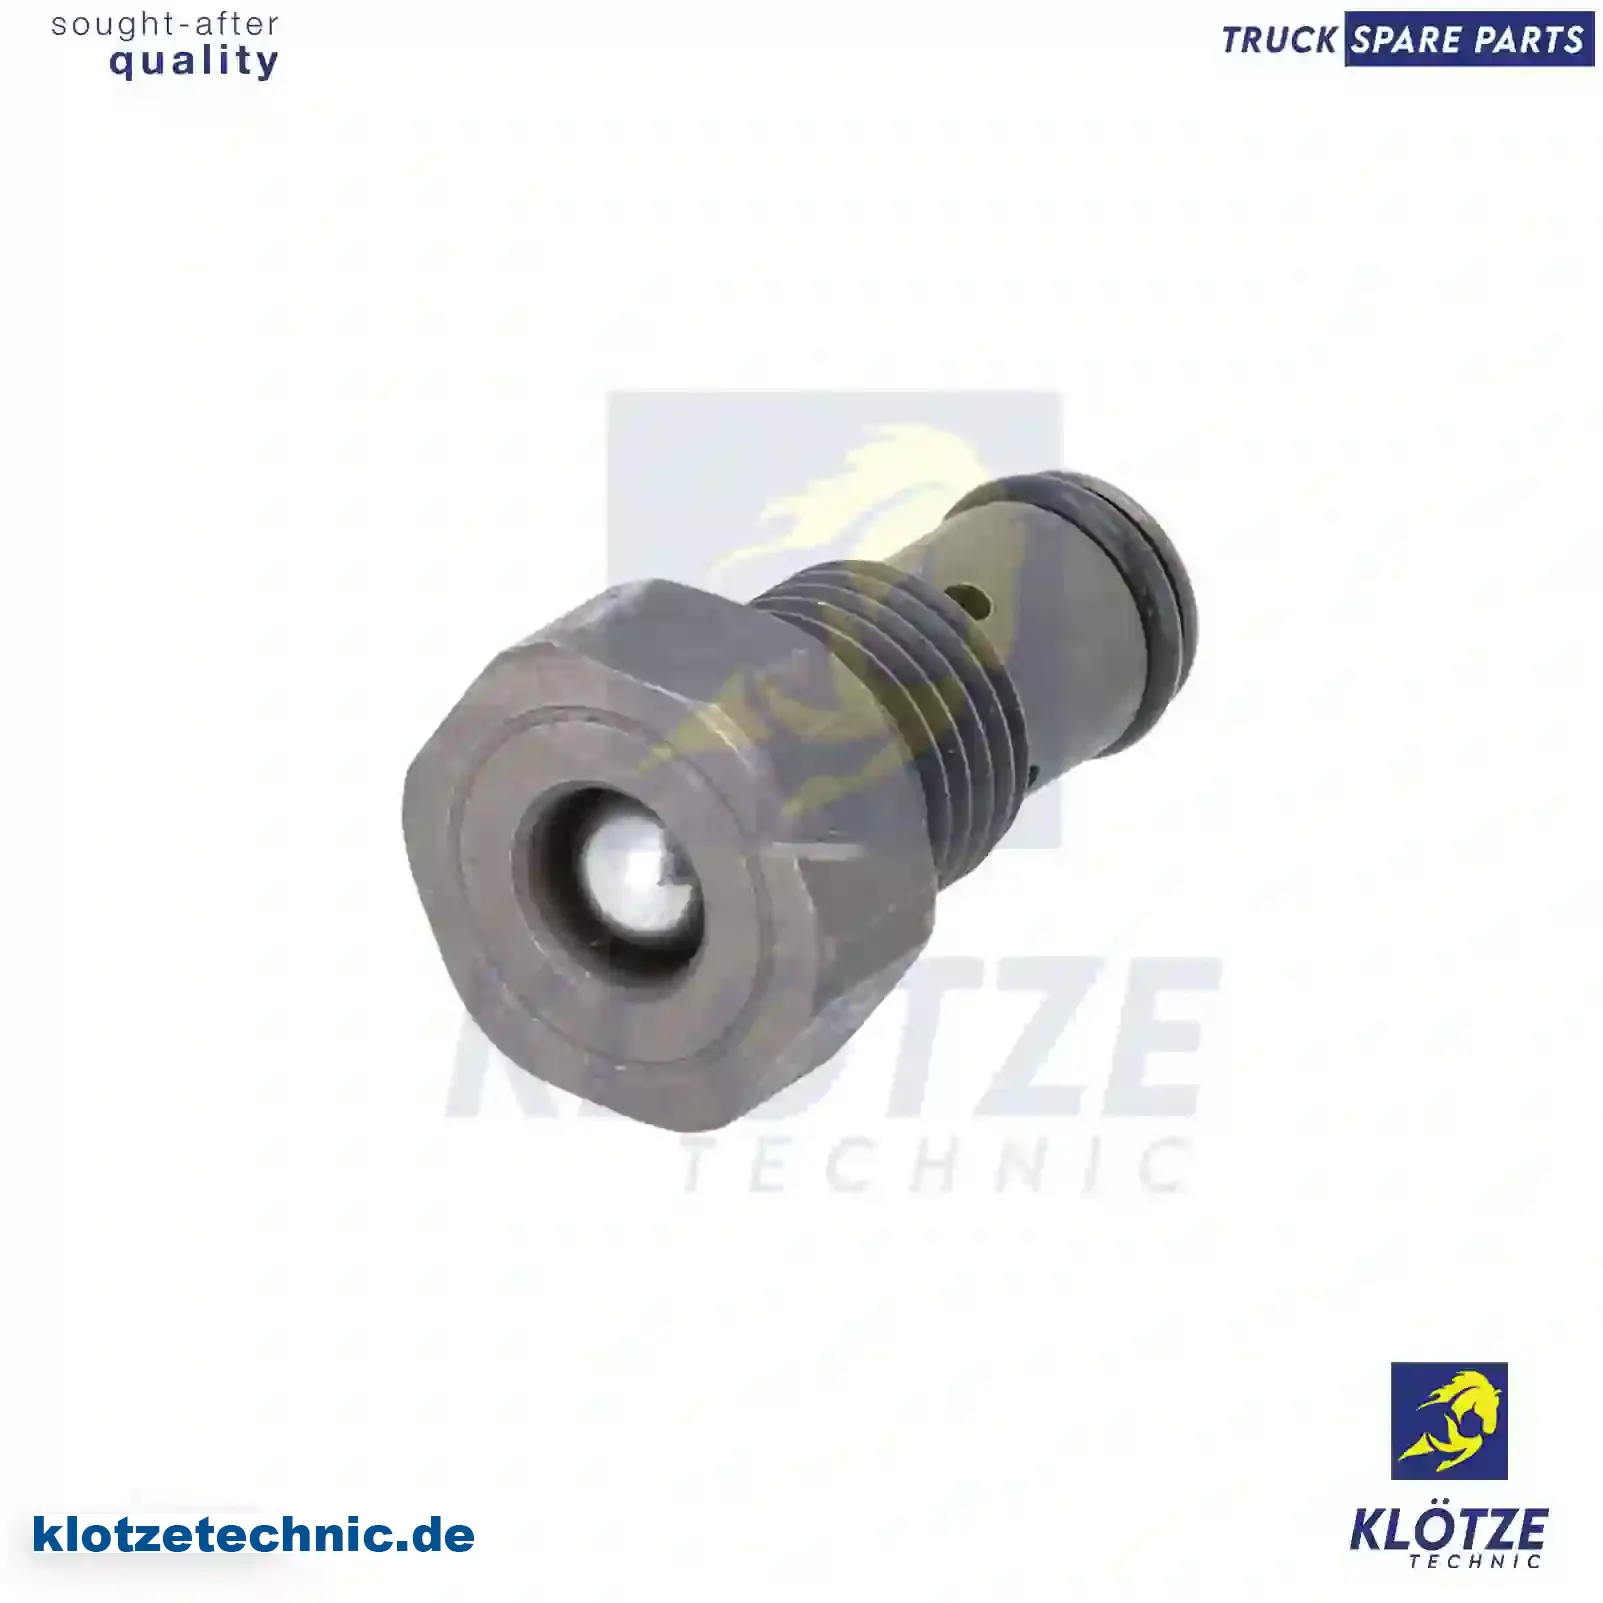 Overflow valve, 51125050032 || Klötze Technic